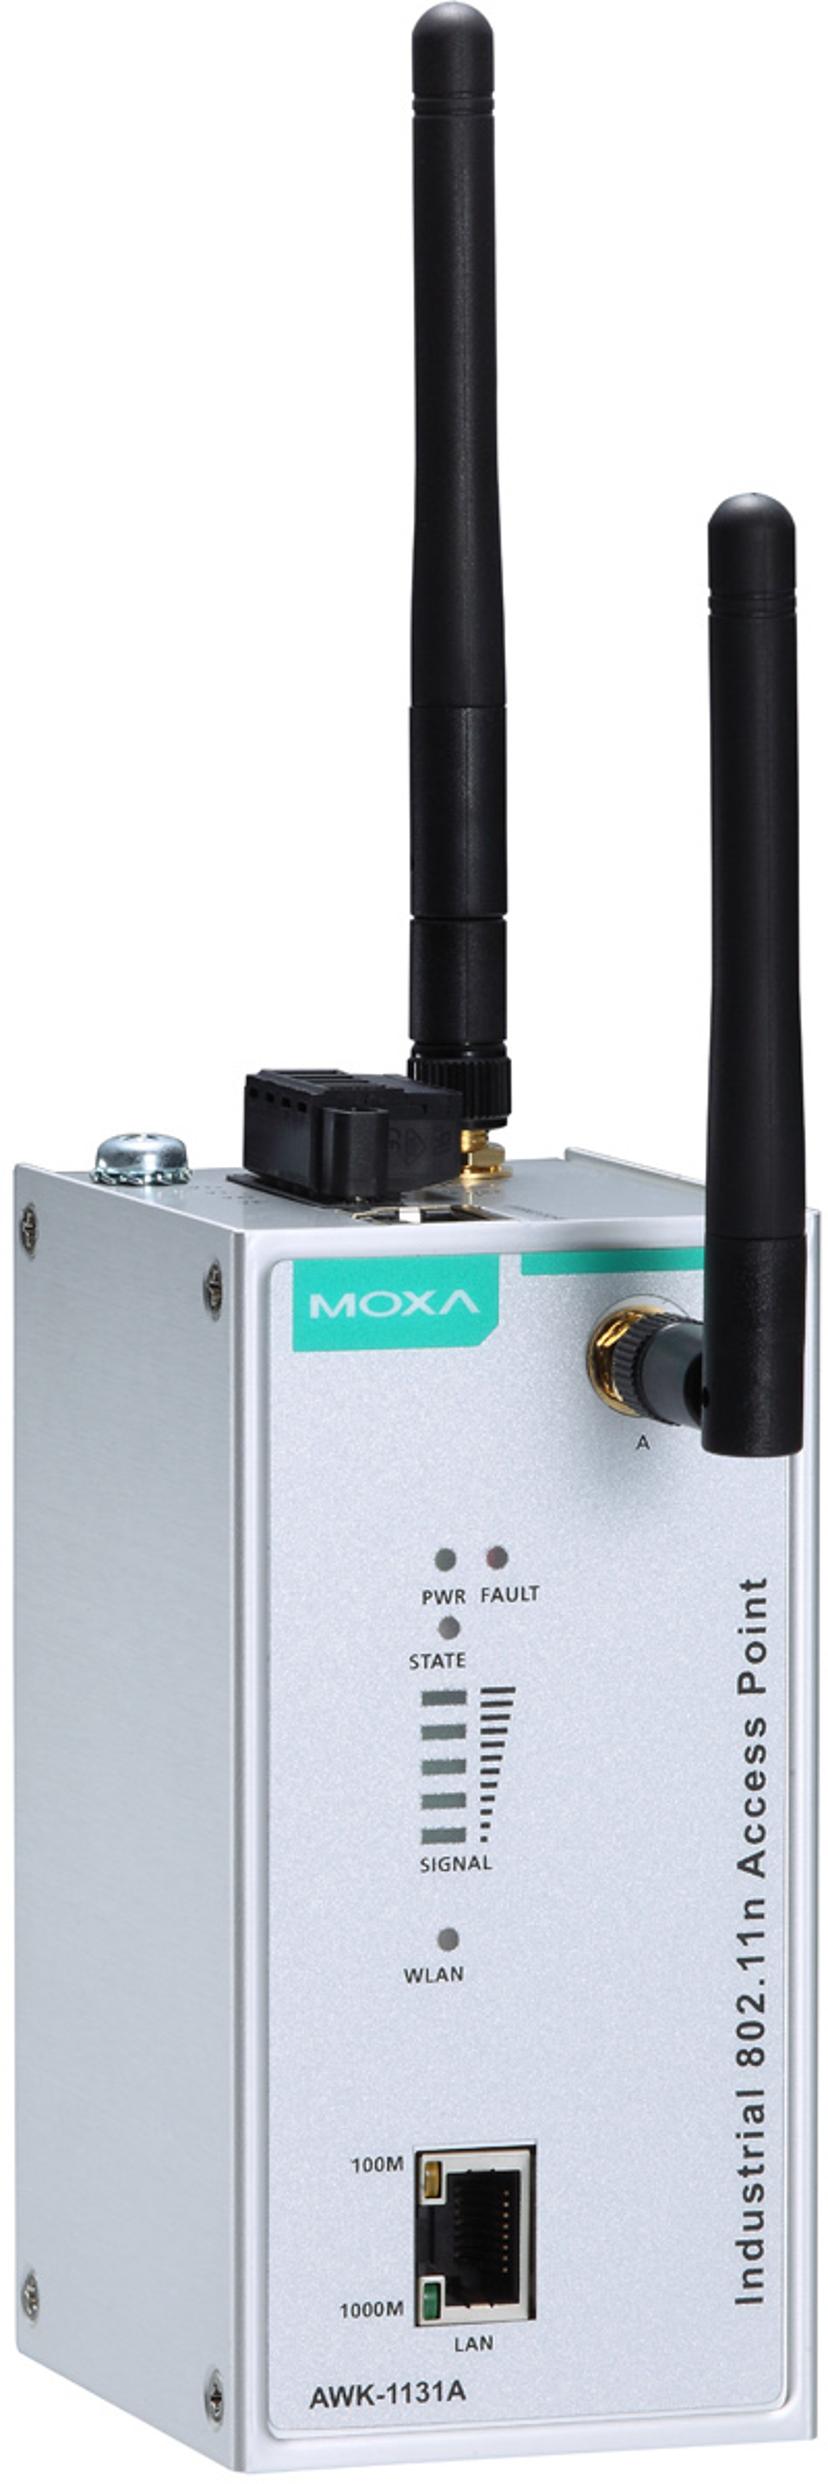 Moxa AWK-1131A teollisuustason tukiasema